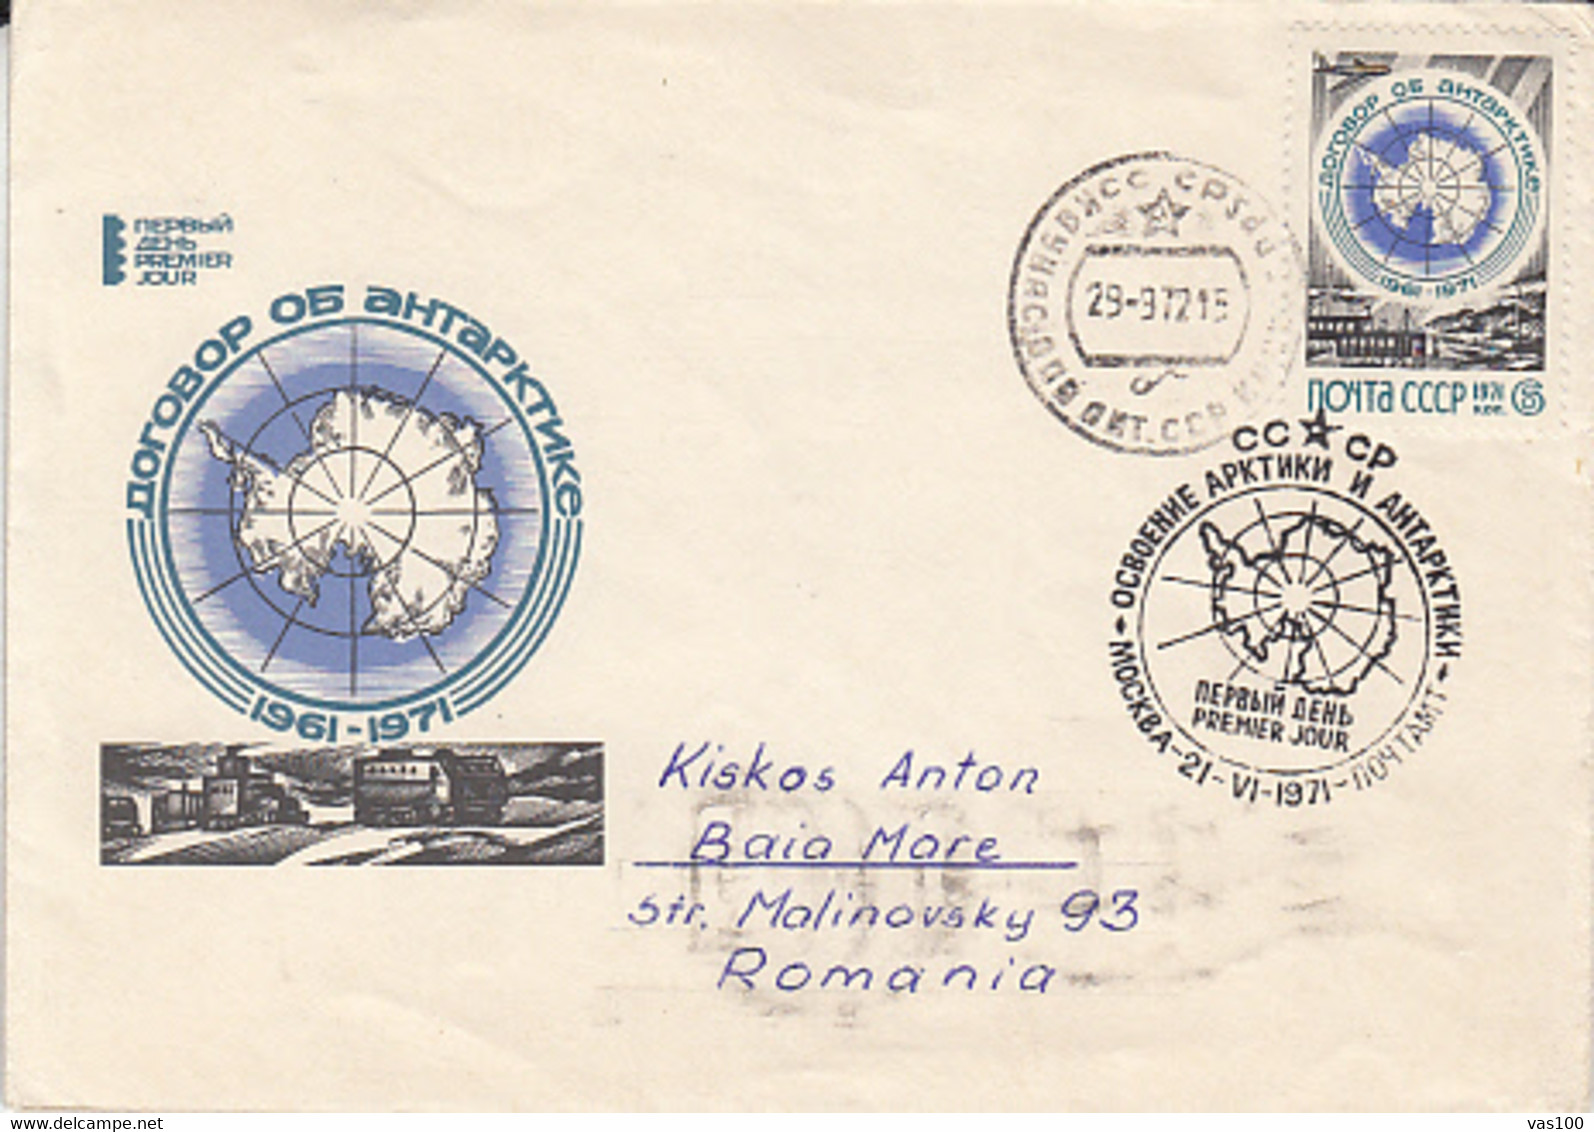 SOUTH POLE, ANTARCTIC TREATY, COVER FDC, 1972, RUSSIA - Trattato Antartico